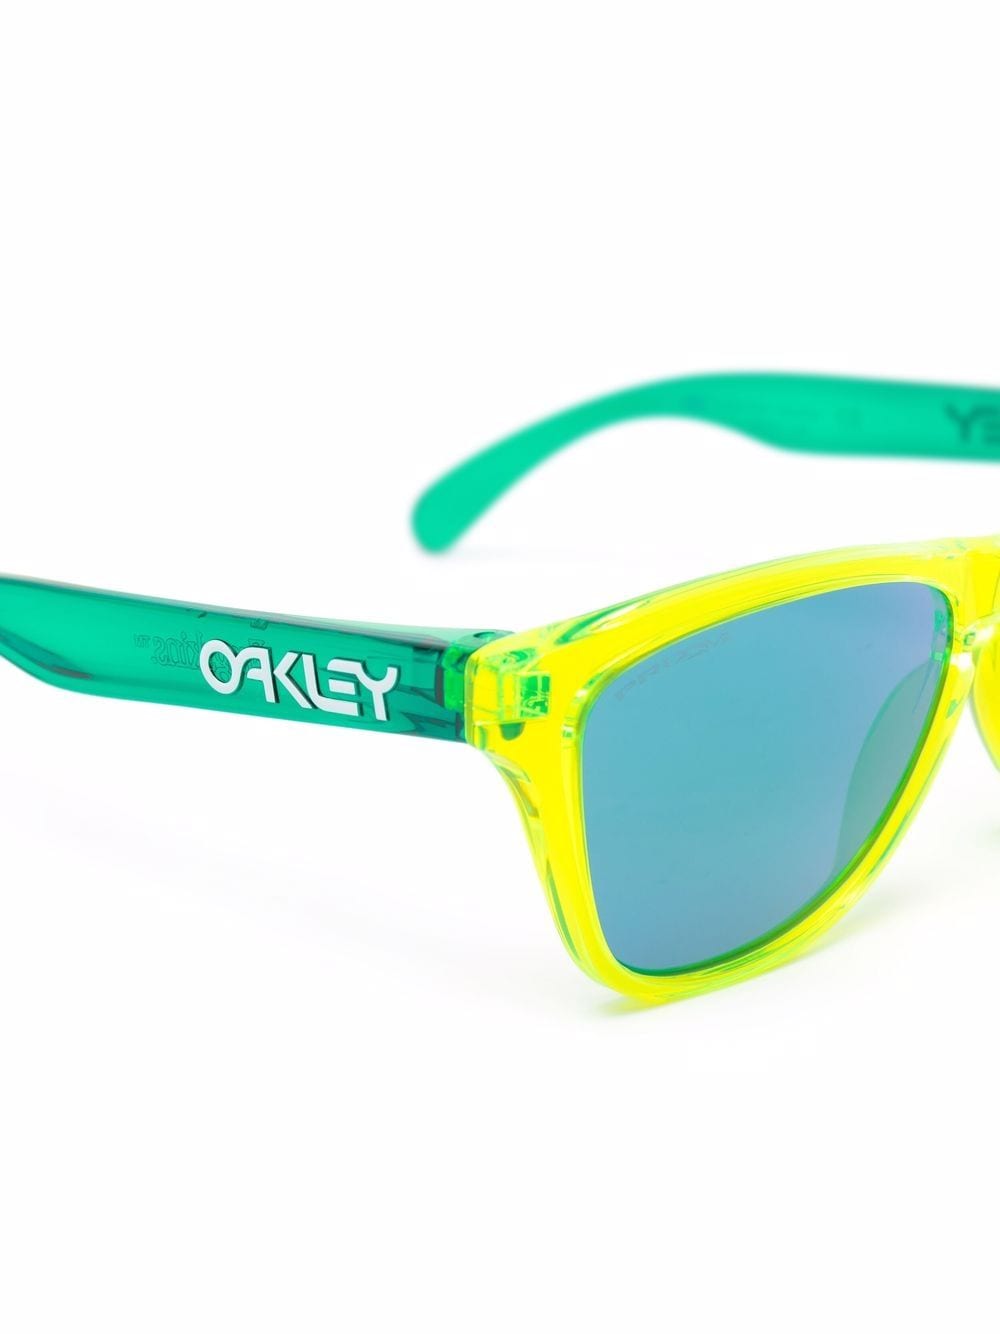 Oakley Zonnebril met tweekleurig montuur - Groen